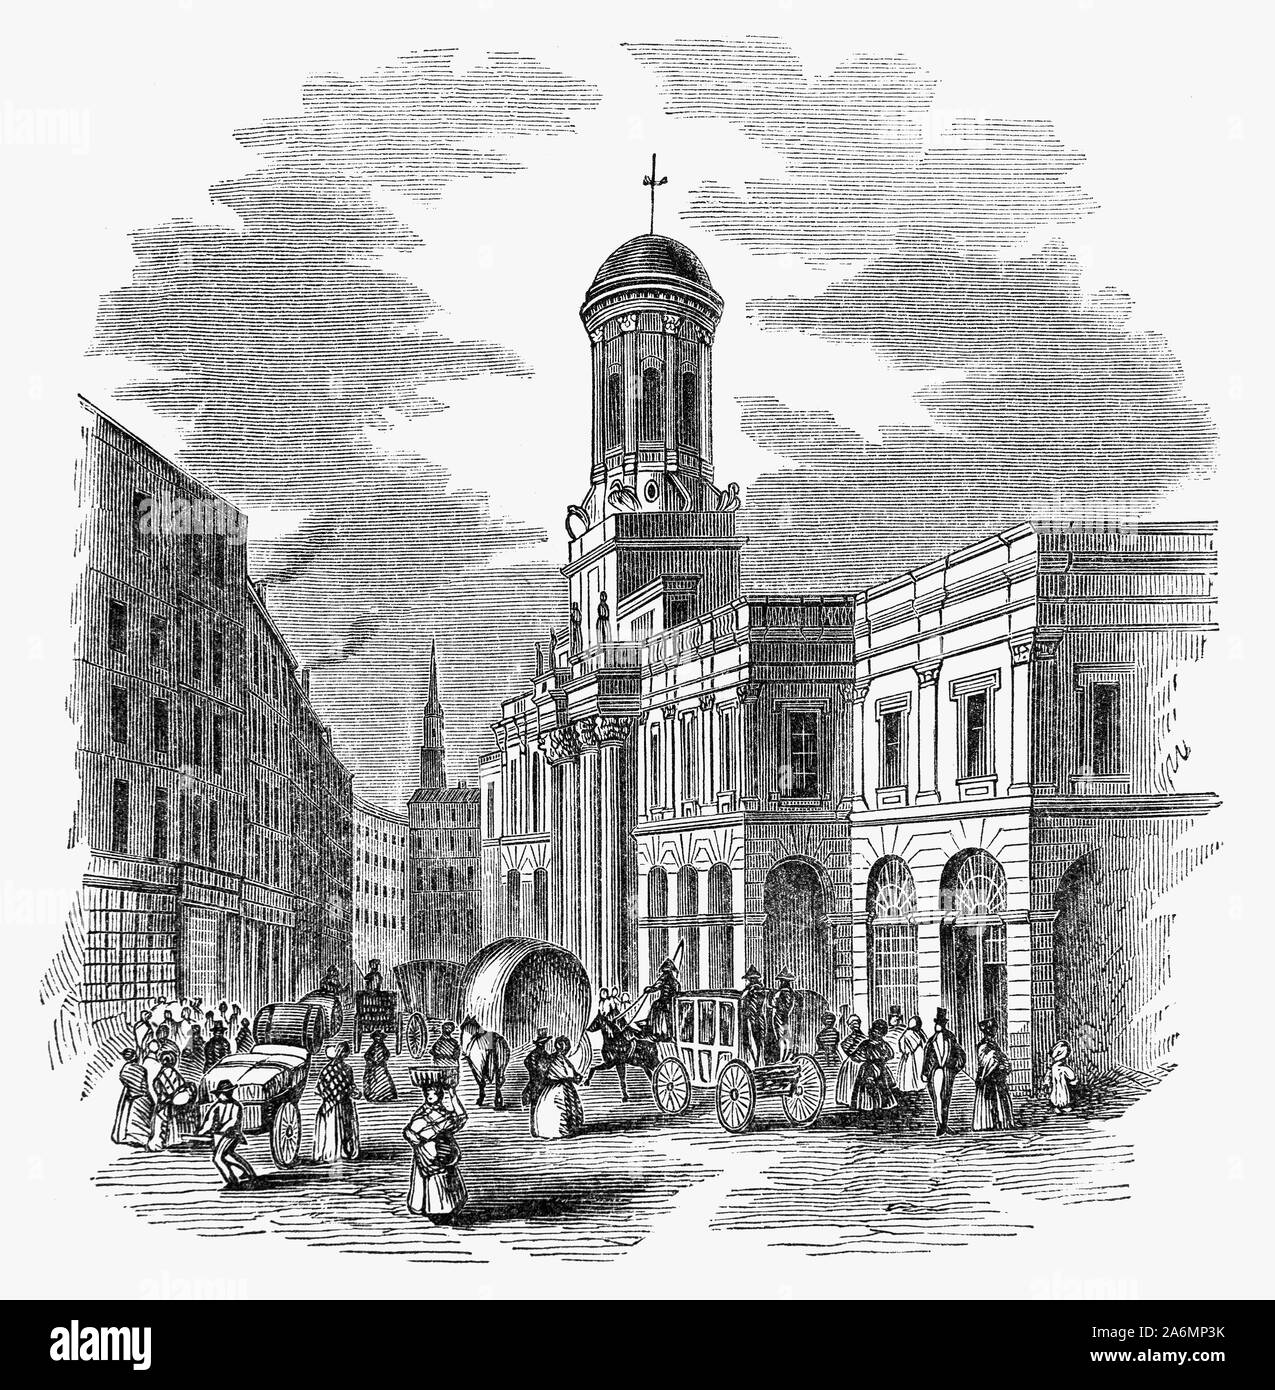 Le Royal Exchange de Londres a été fondée au xvie siècle par le marchand Sir Thomas Gresham sur la suggestion de son facteur Richard Clough à agir en tant que centre de commerce de la ville de Londres. Gresham's bâtiment original a été détruit dans le Grand Incendie de Londres en 1666. Le deuxième bâtiment construit sur le site flanquée de Cornhill et Threadneedle Street a été conçu par Edward Jarman et ouvert en 1669, mais qui a aussi brûlé, le 10 janvier 1838. Il avait été utilisé par l'assurance Lloyd's Market, qui a été forcé de se déplacer temporairement pour la South Sea Chambre suite à l'incendie de 1838. Banque D'Images